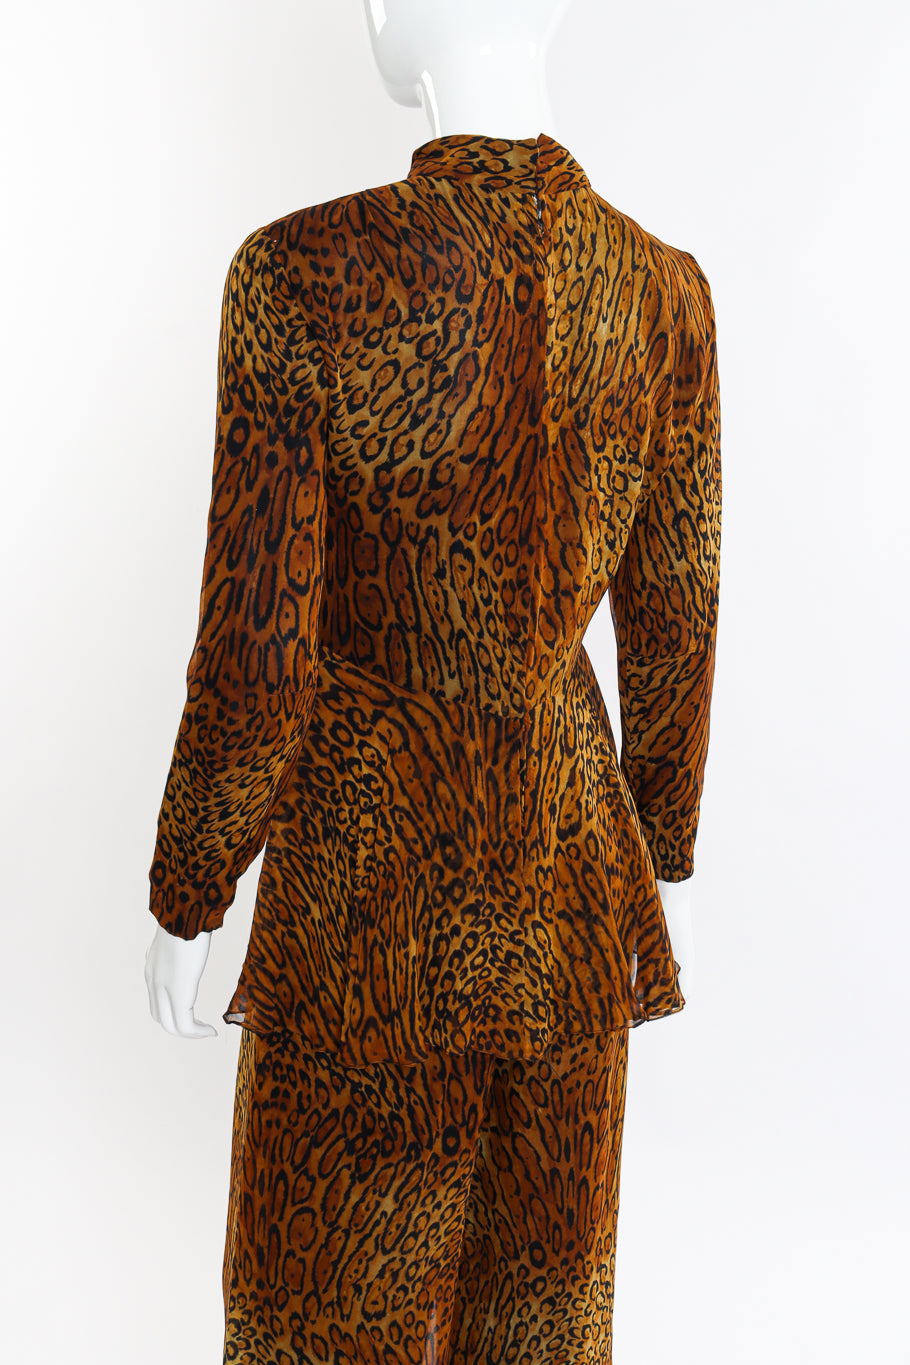 Vintage Oscar de la Renta Leopard Silk Jumpsuit back on mannequin closeup @recessla